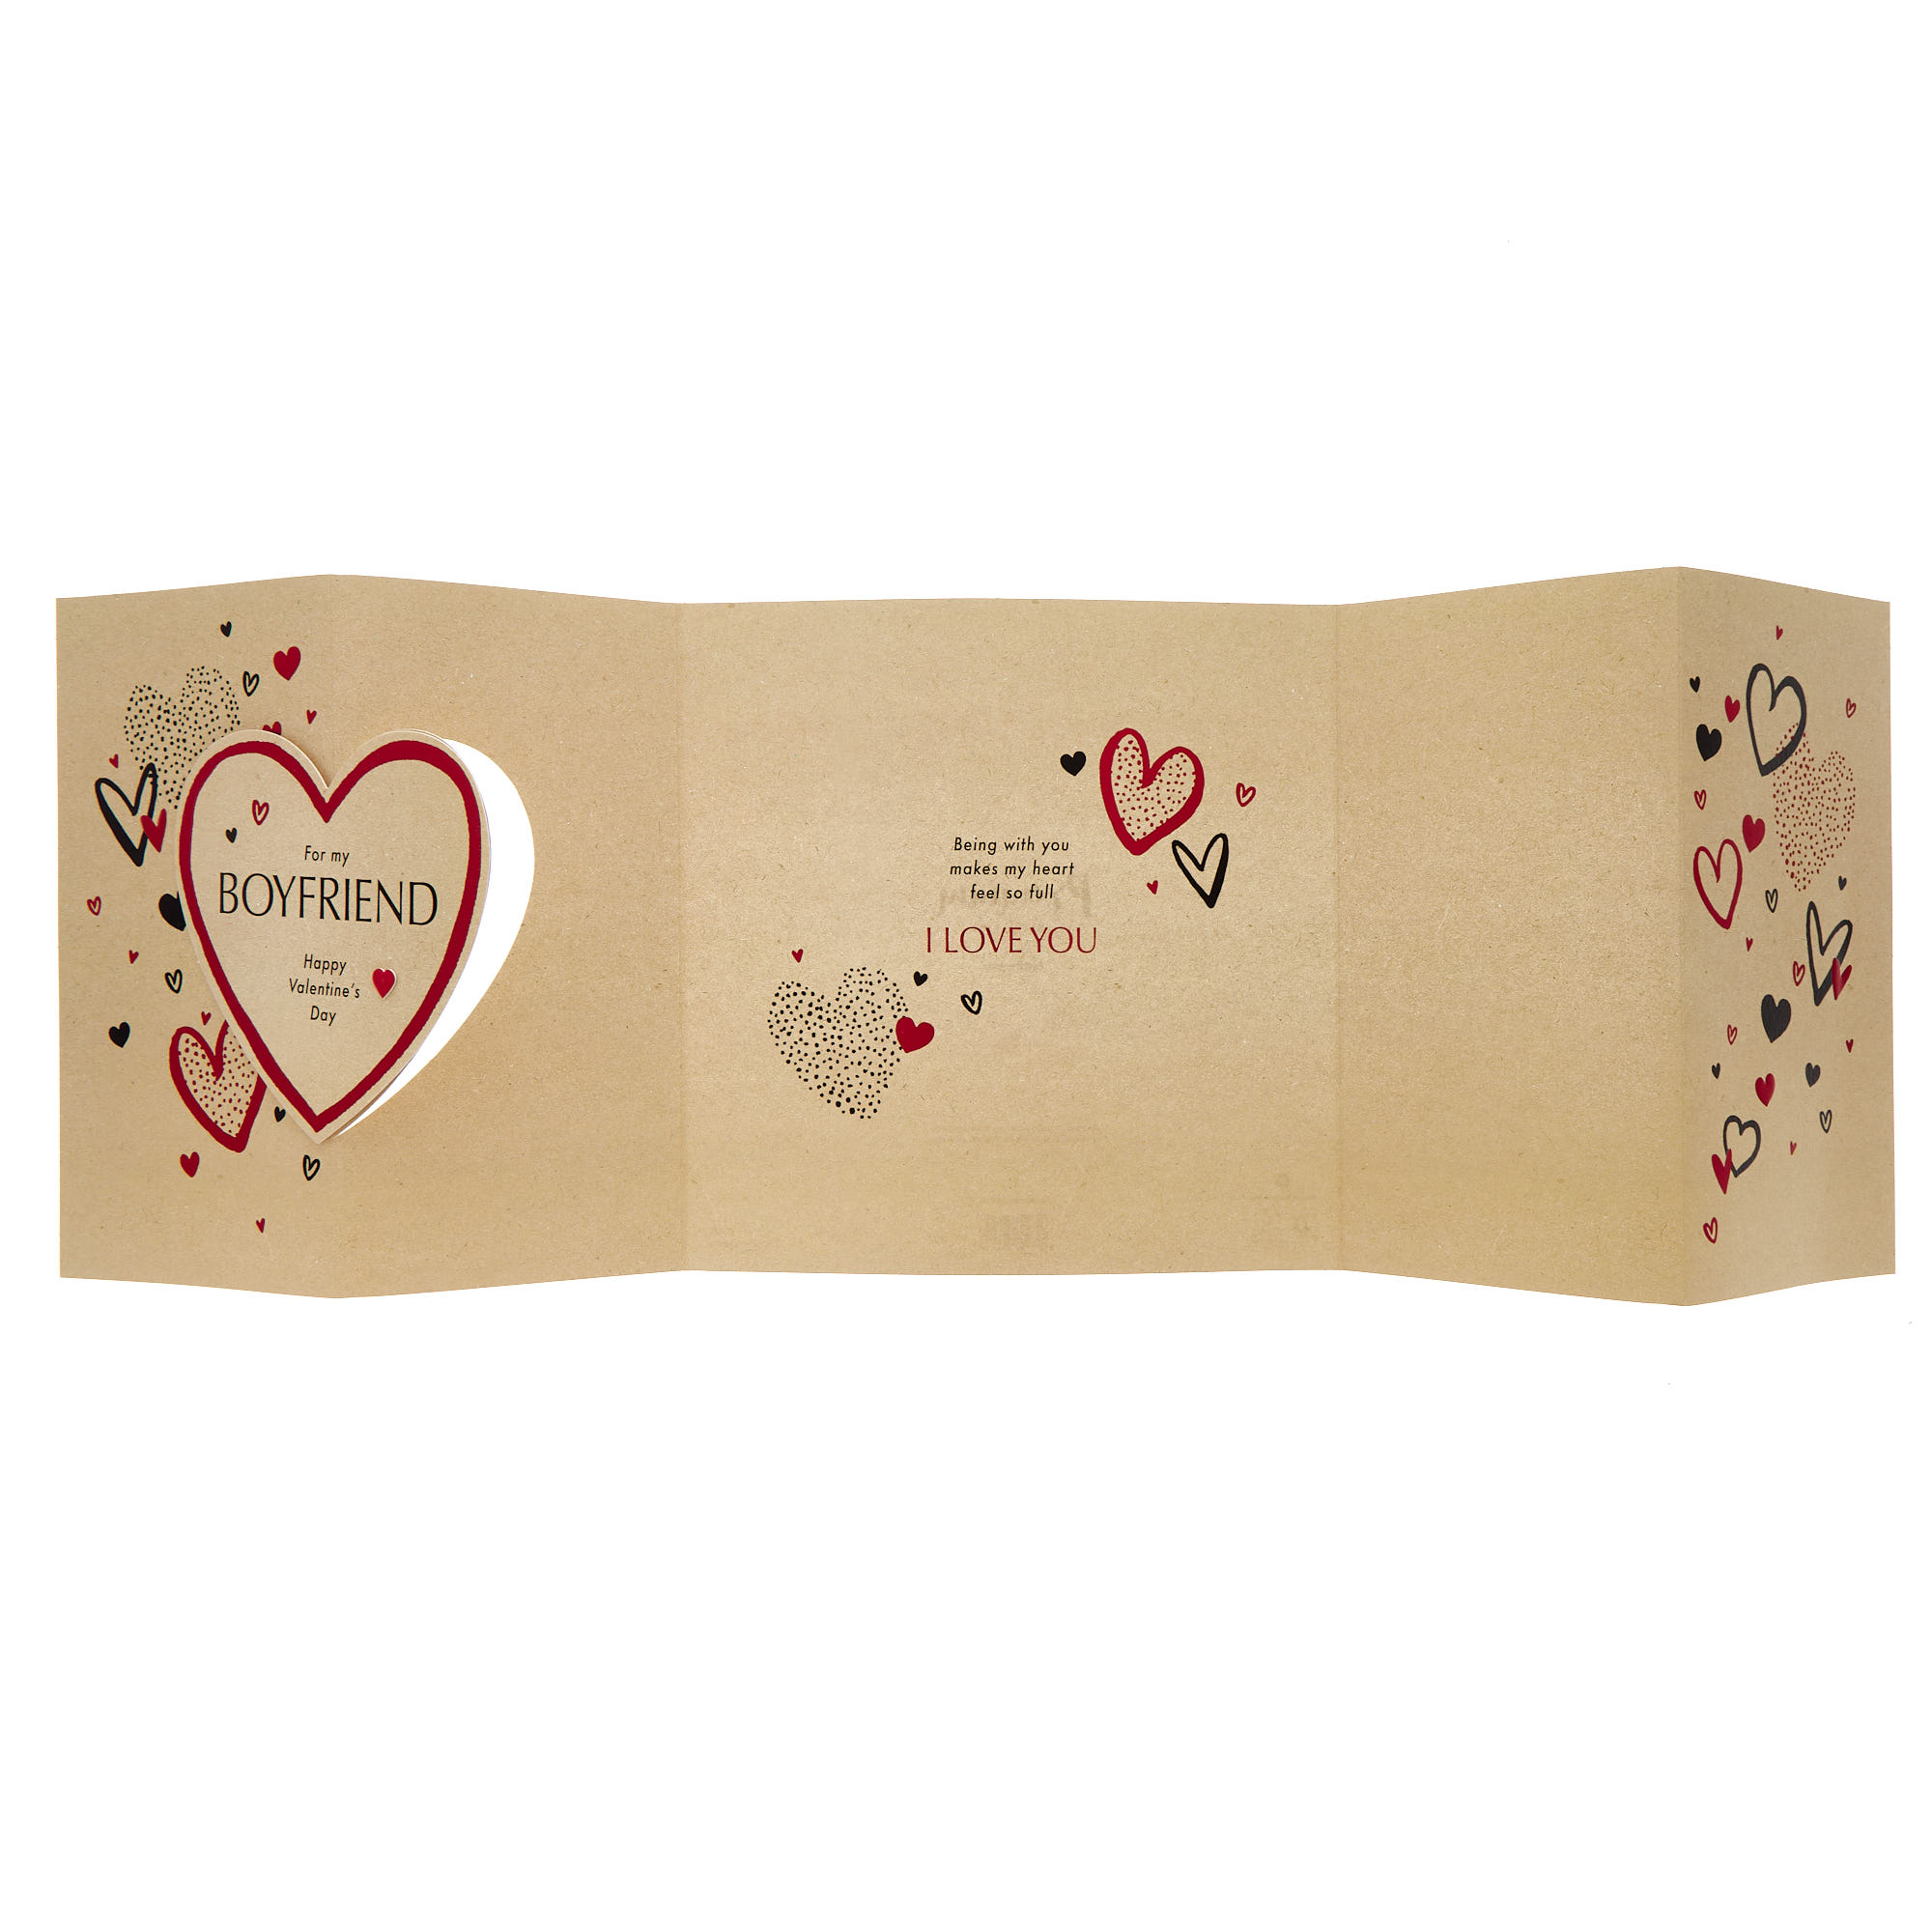 Boyfriend Love Heart Luxury Boxed Valentine's Day Card